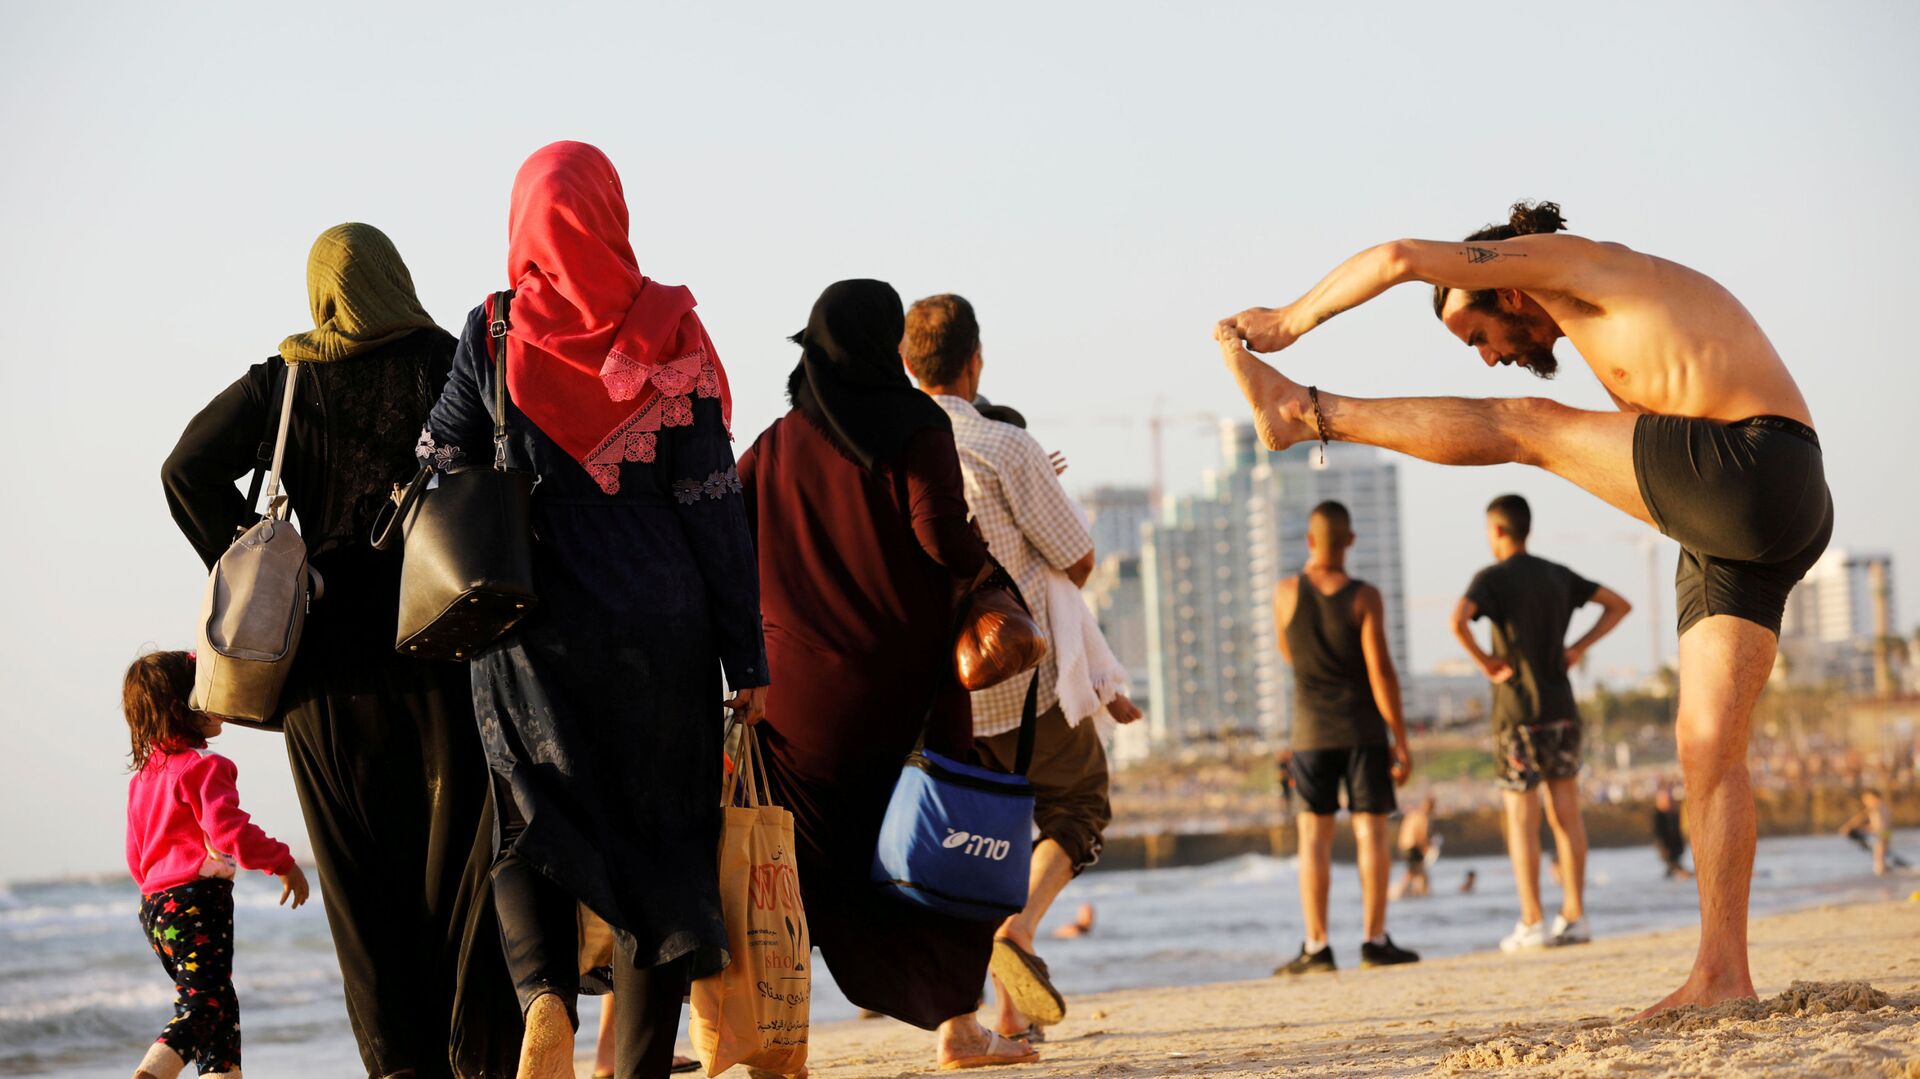 Люди на побережье Средиземного моря во время мусульманского праздника Ураза-байрам на пляже в Тель-Авиве, Израиль - Sputnik Узбекистан, 1920, 27.10.2021